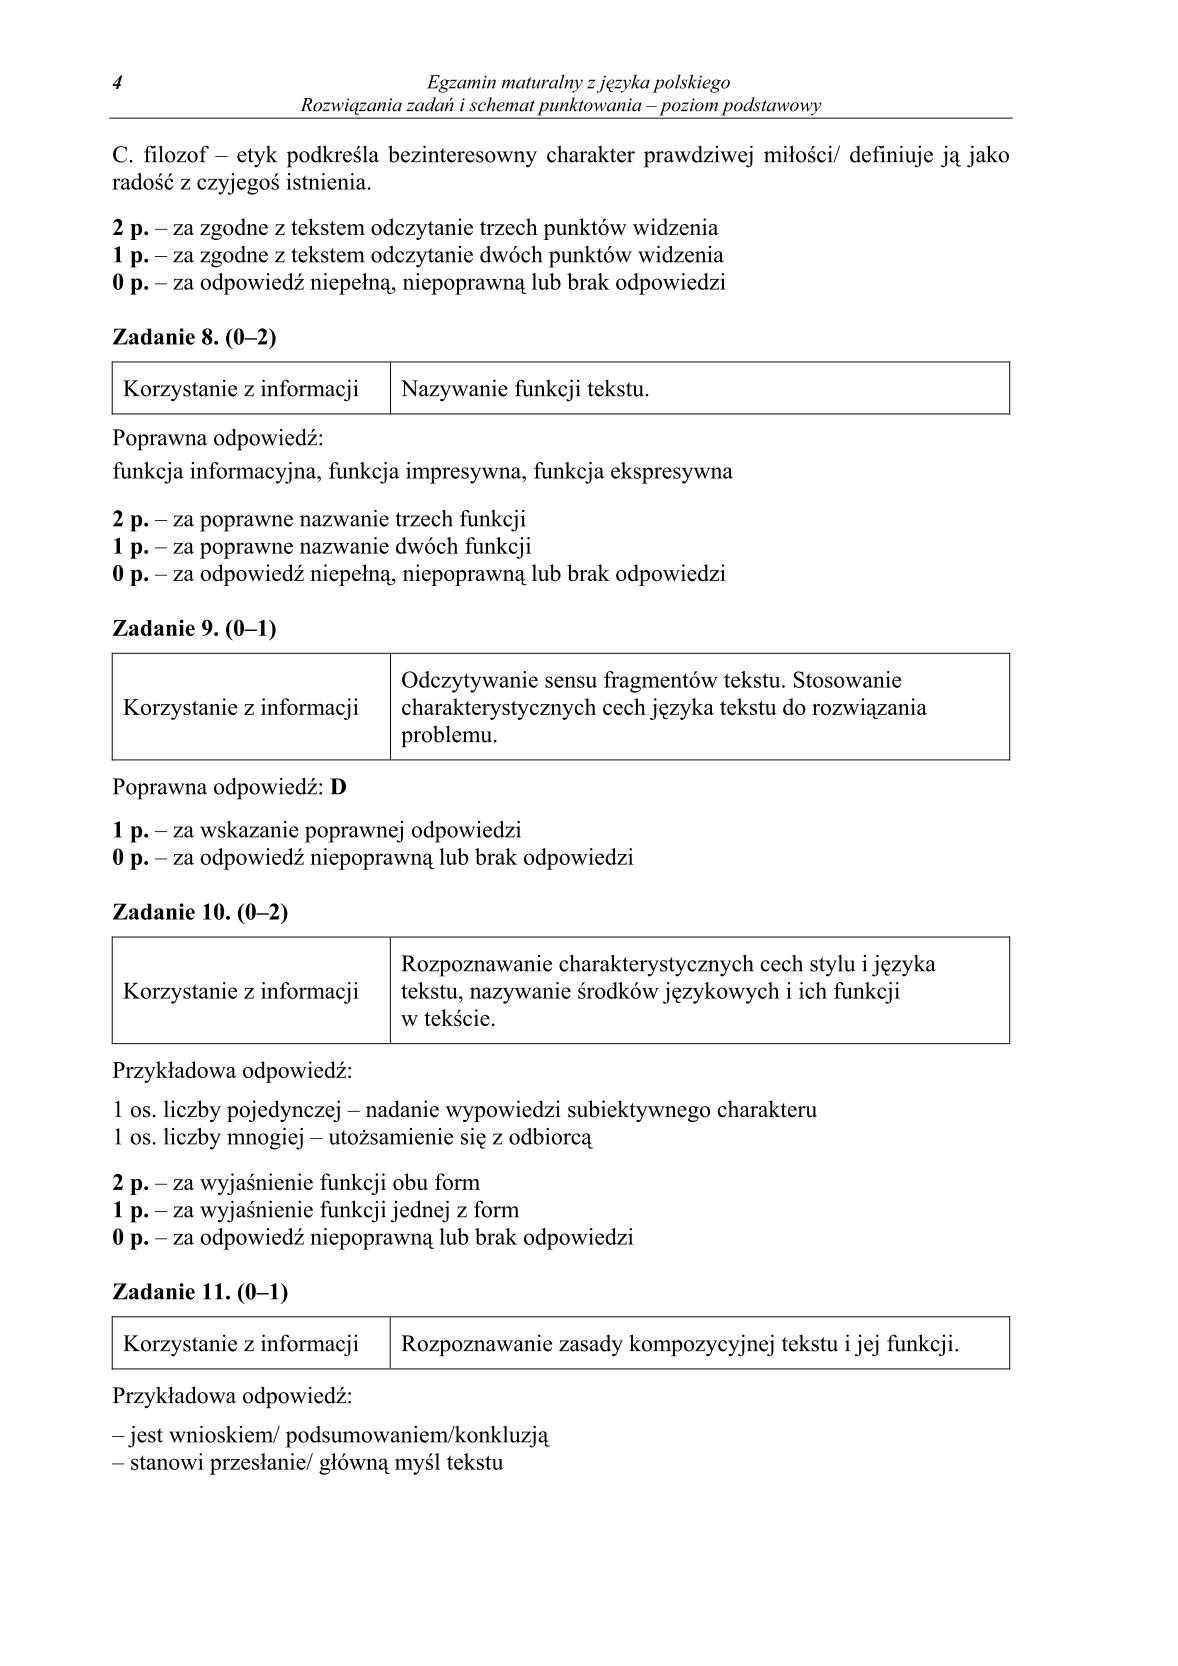 odpowiedzi-jezyk-polski-poziom-podstawowy-matura-2014-str.4